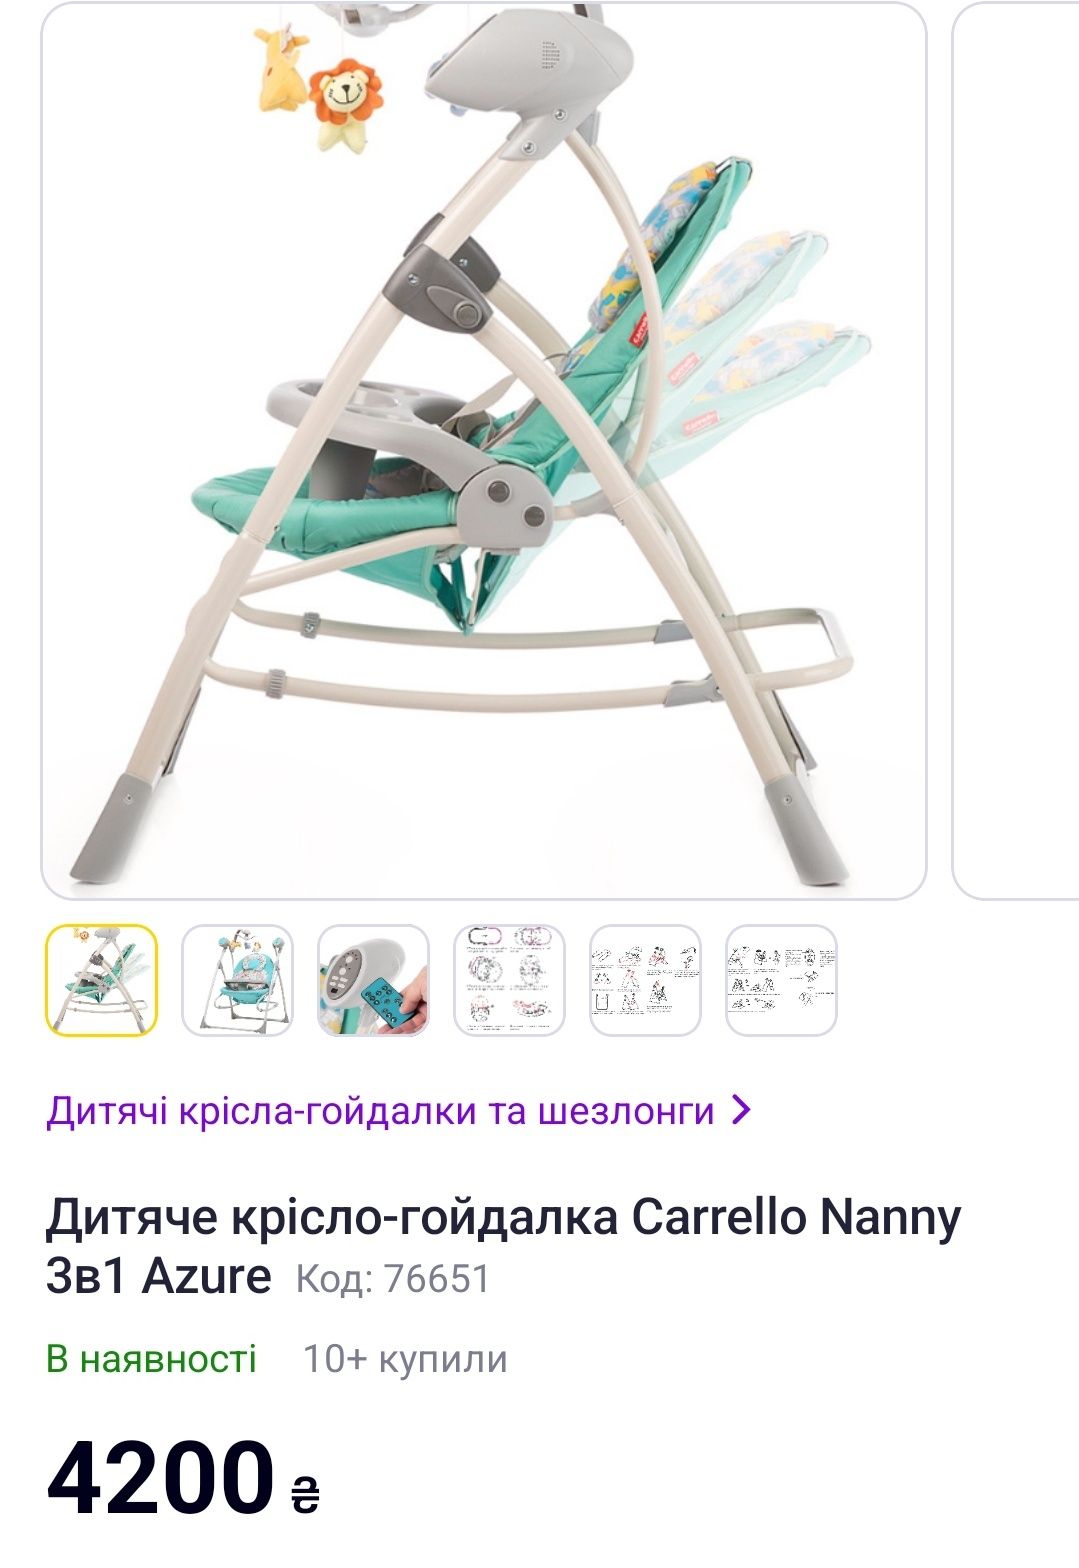 Дитяче крісло-гойдалка 3в1 Carrello Nanny + мобіль на акамуляторі